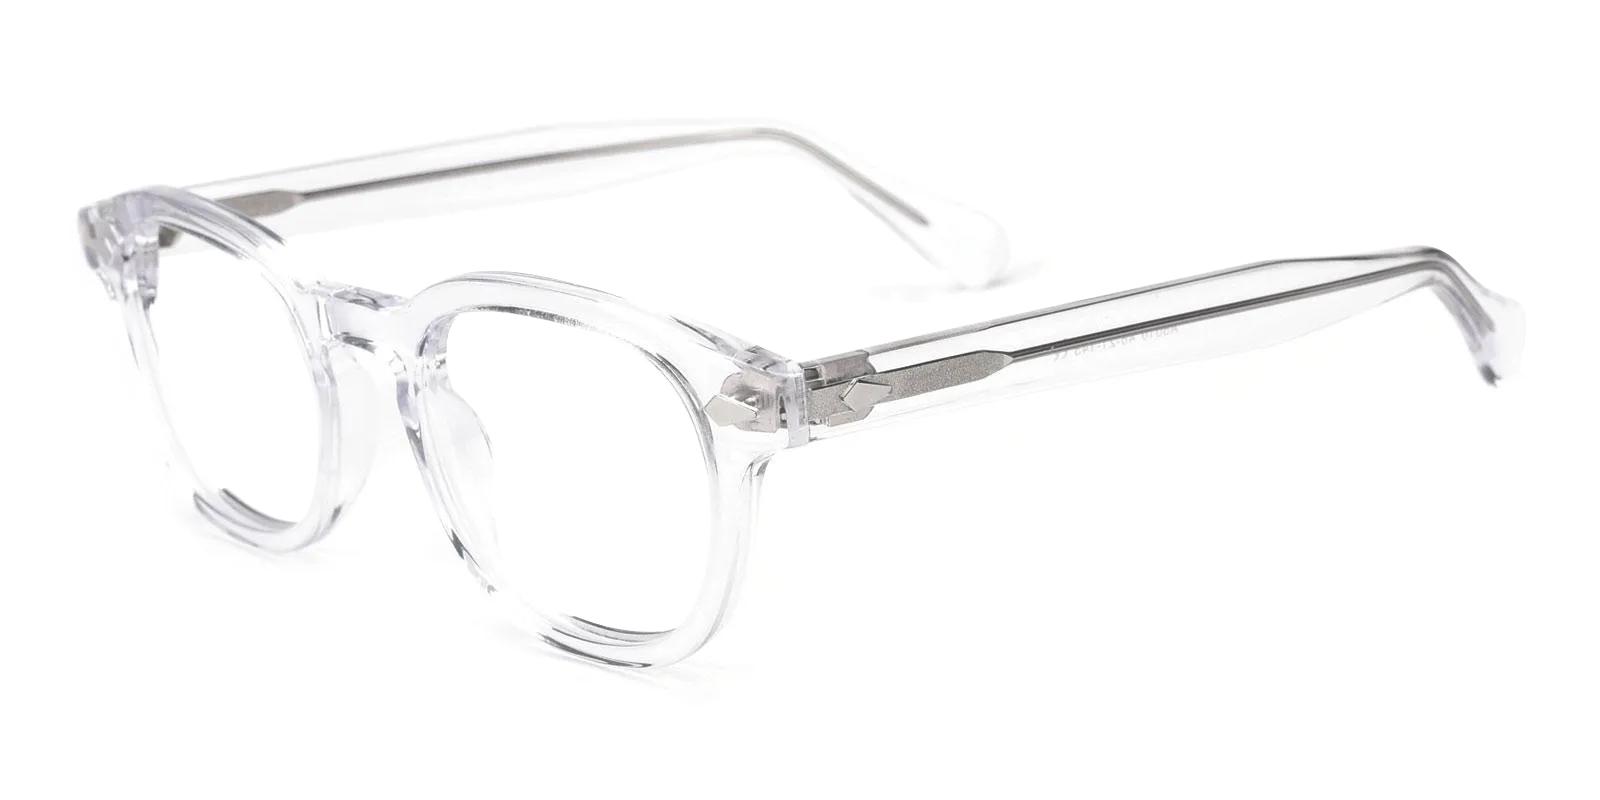 Crist Fclear Acetate Eyeglasses , UniversalBridgeFit Frames from ABBE Glasses